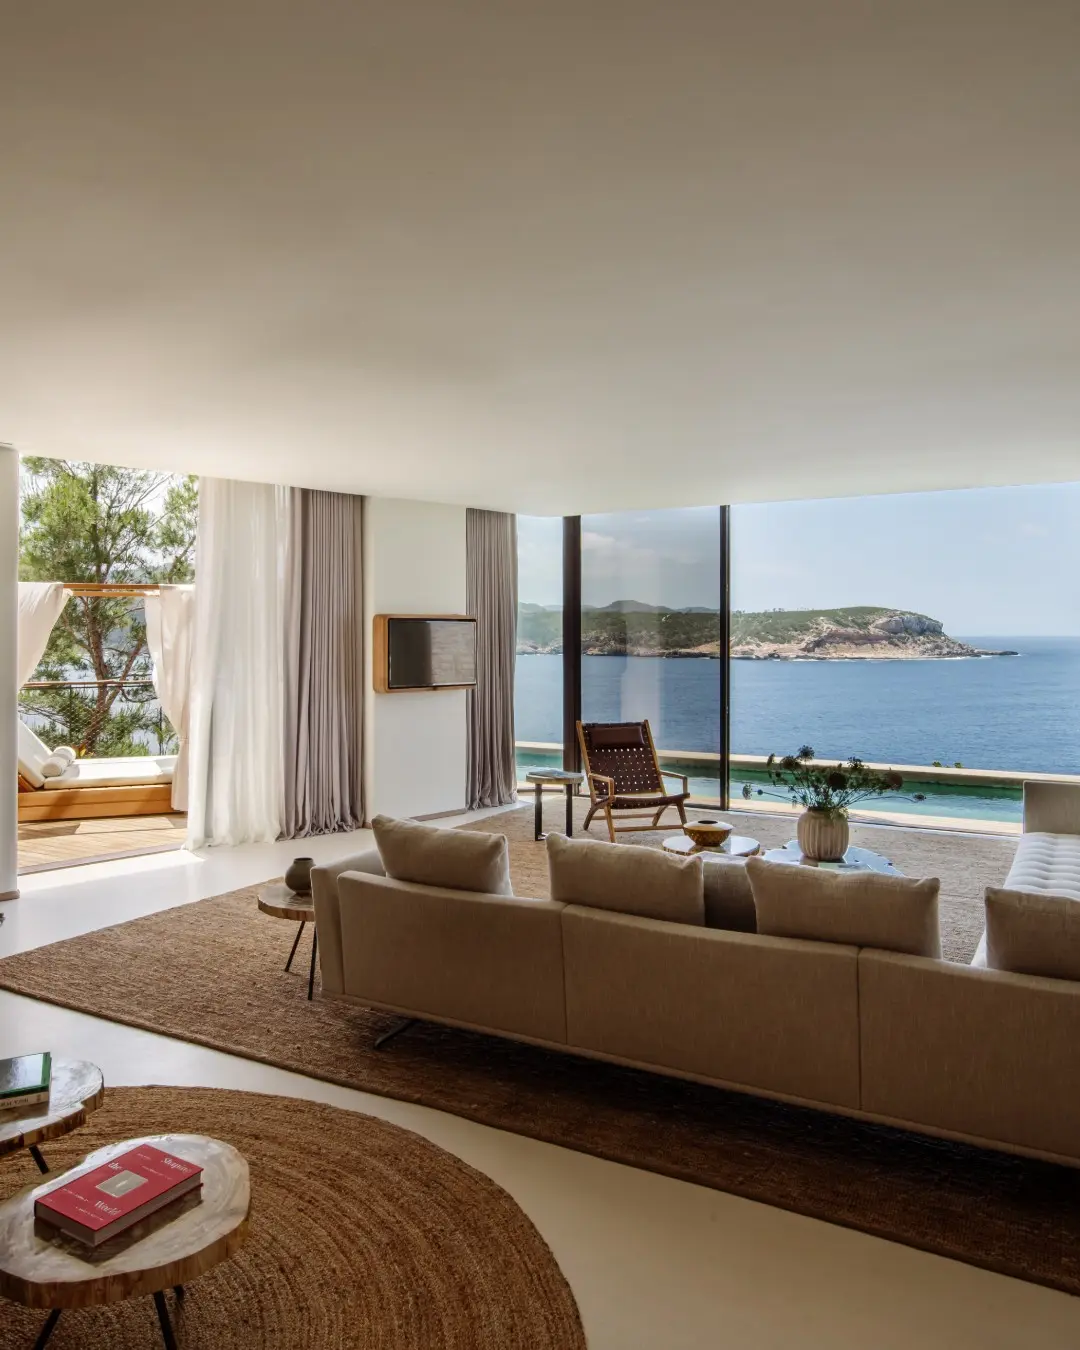 Imagen del hotel de Ibiza donde se alojan Tamara Falcó e Íñigo